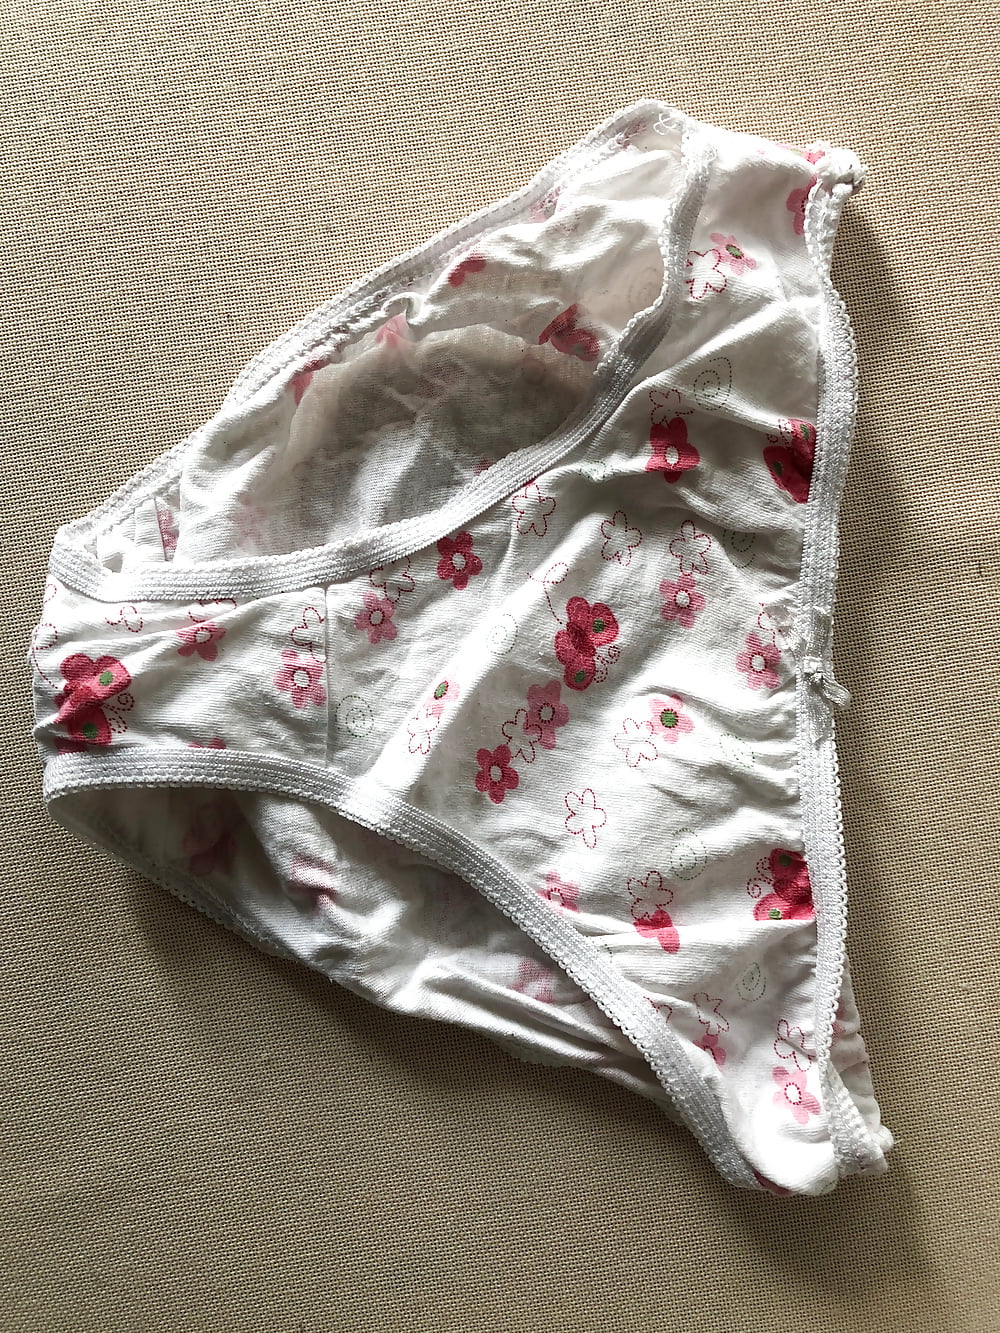 Panties part I (16/20)